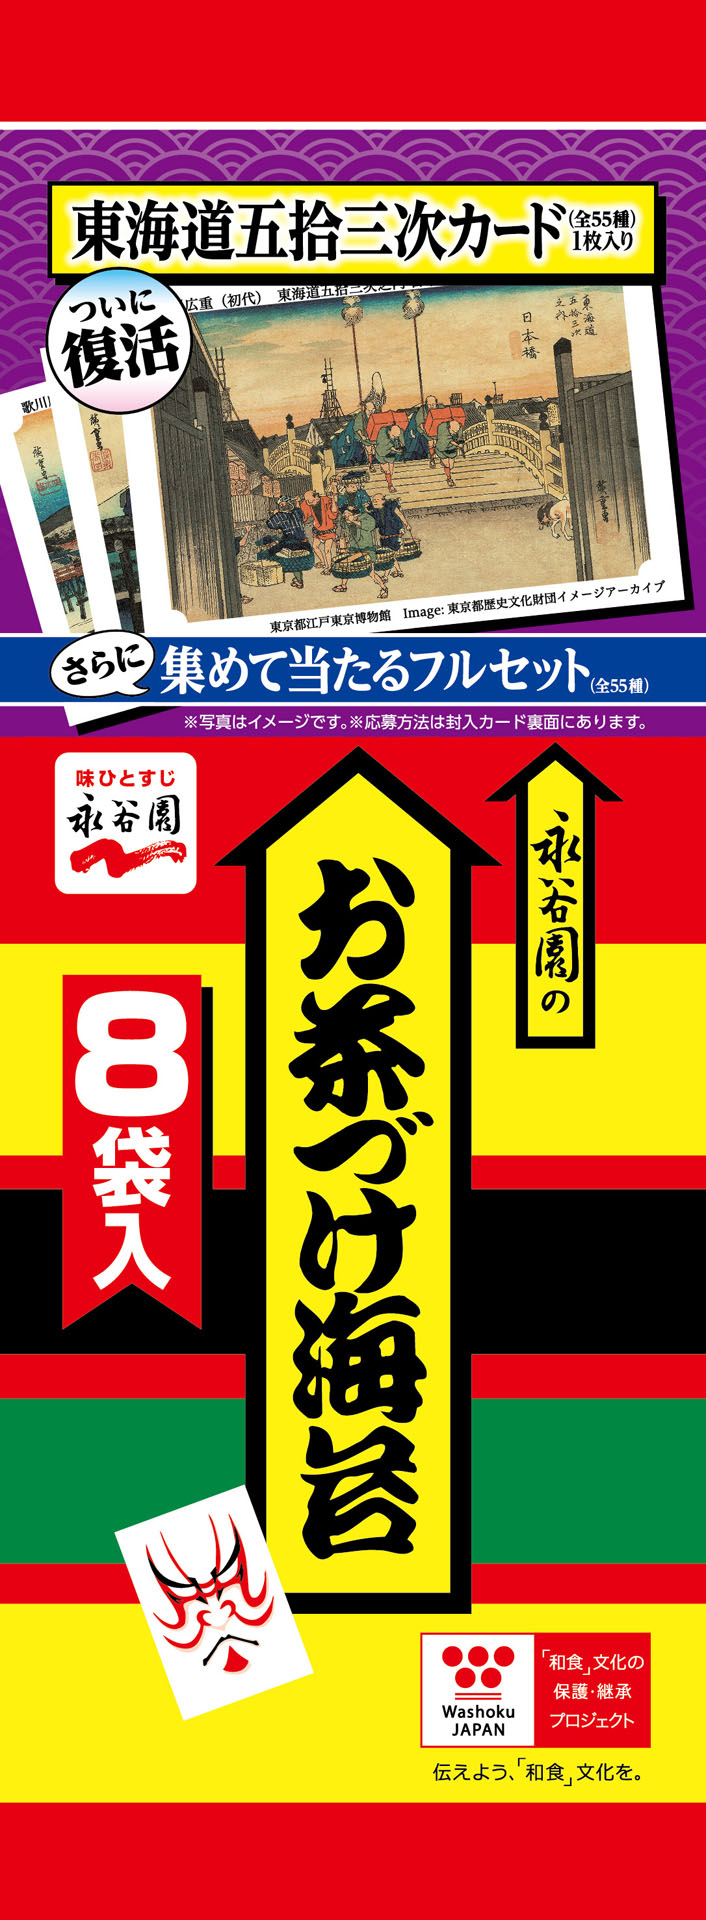 贈り物 永谷園のお茶漬け 歌川広重 東海道五十三次カード3種 - 通販